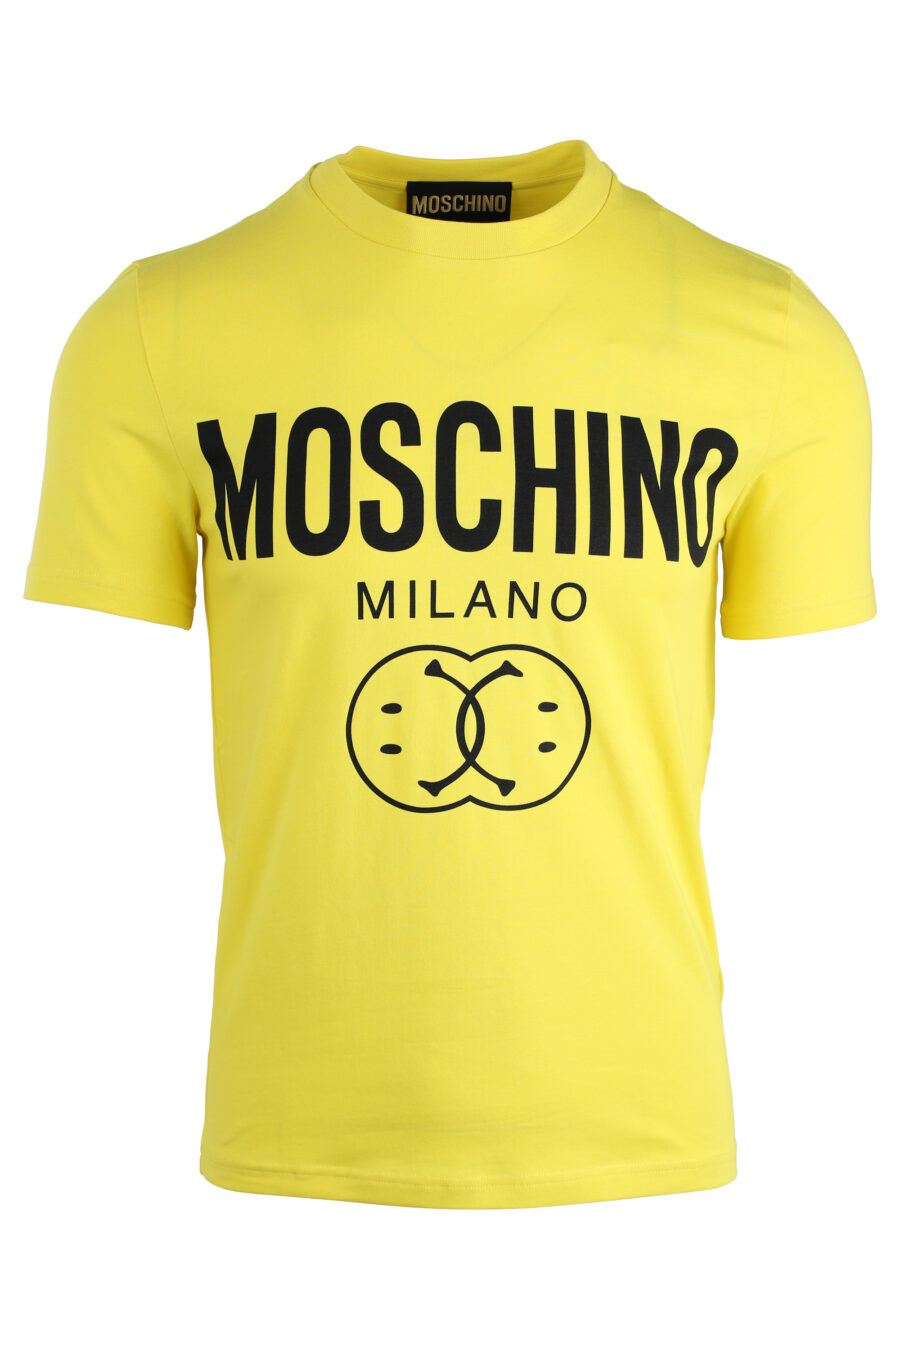 Camiseta amarilla con maxi logo doble "smiley" - IMG 1676